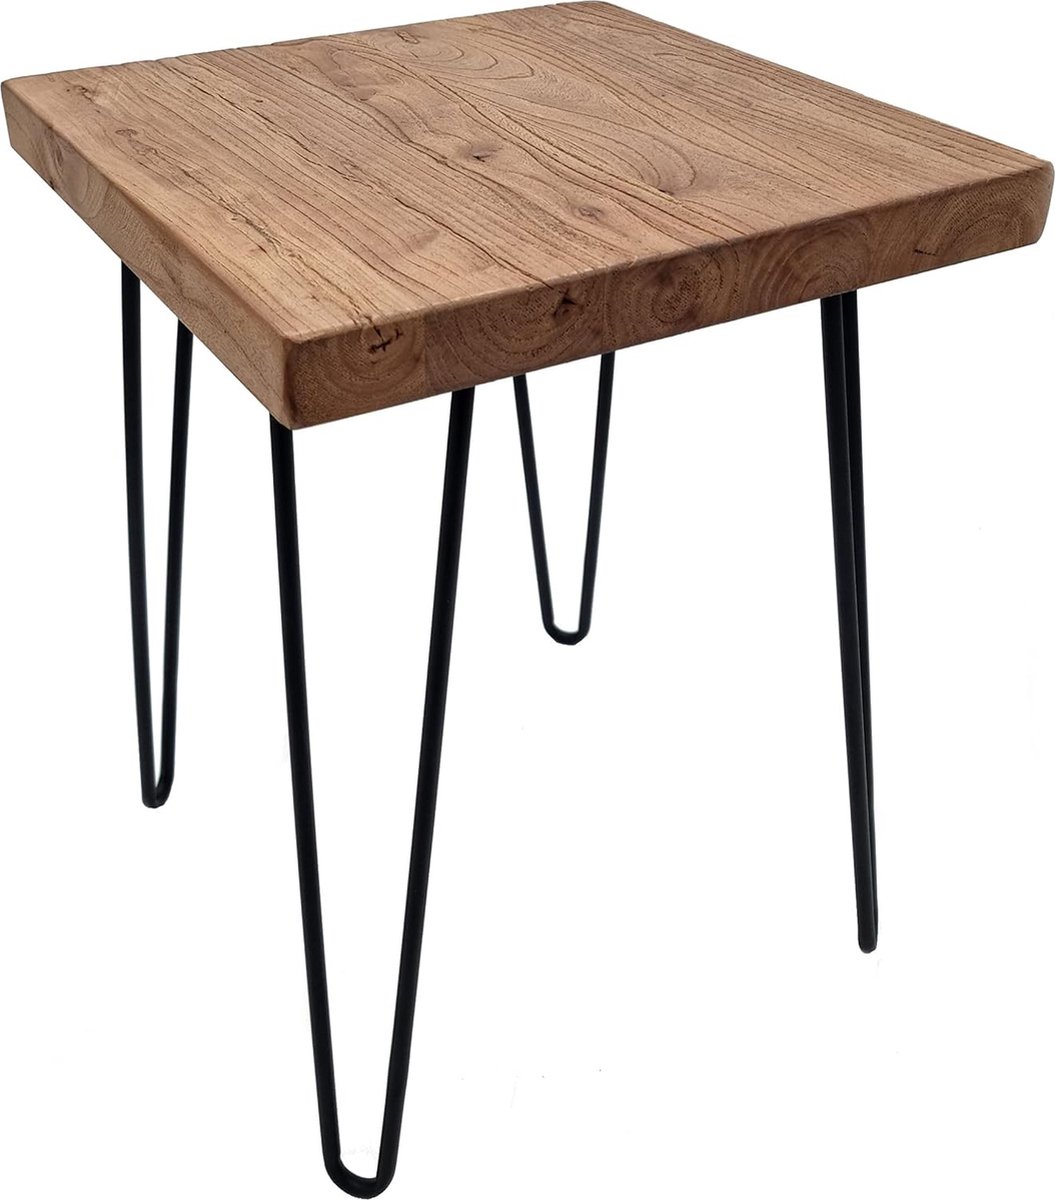 Bijzettafel van iepenhout - vierkant / 40 cm - massief houten salontafel met 4 poten van metaal - decoratieve houten bank tafel bloemen kruk iep massief